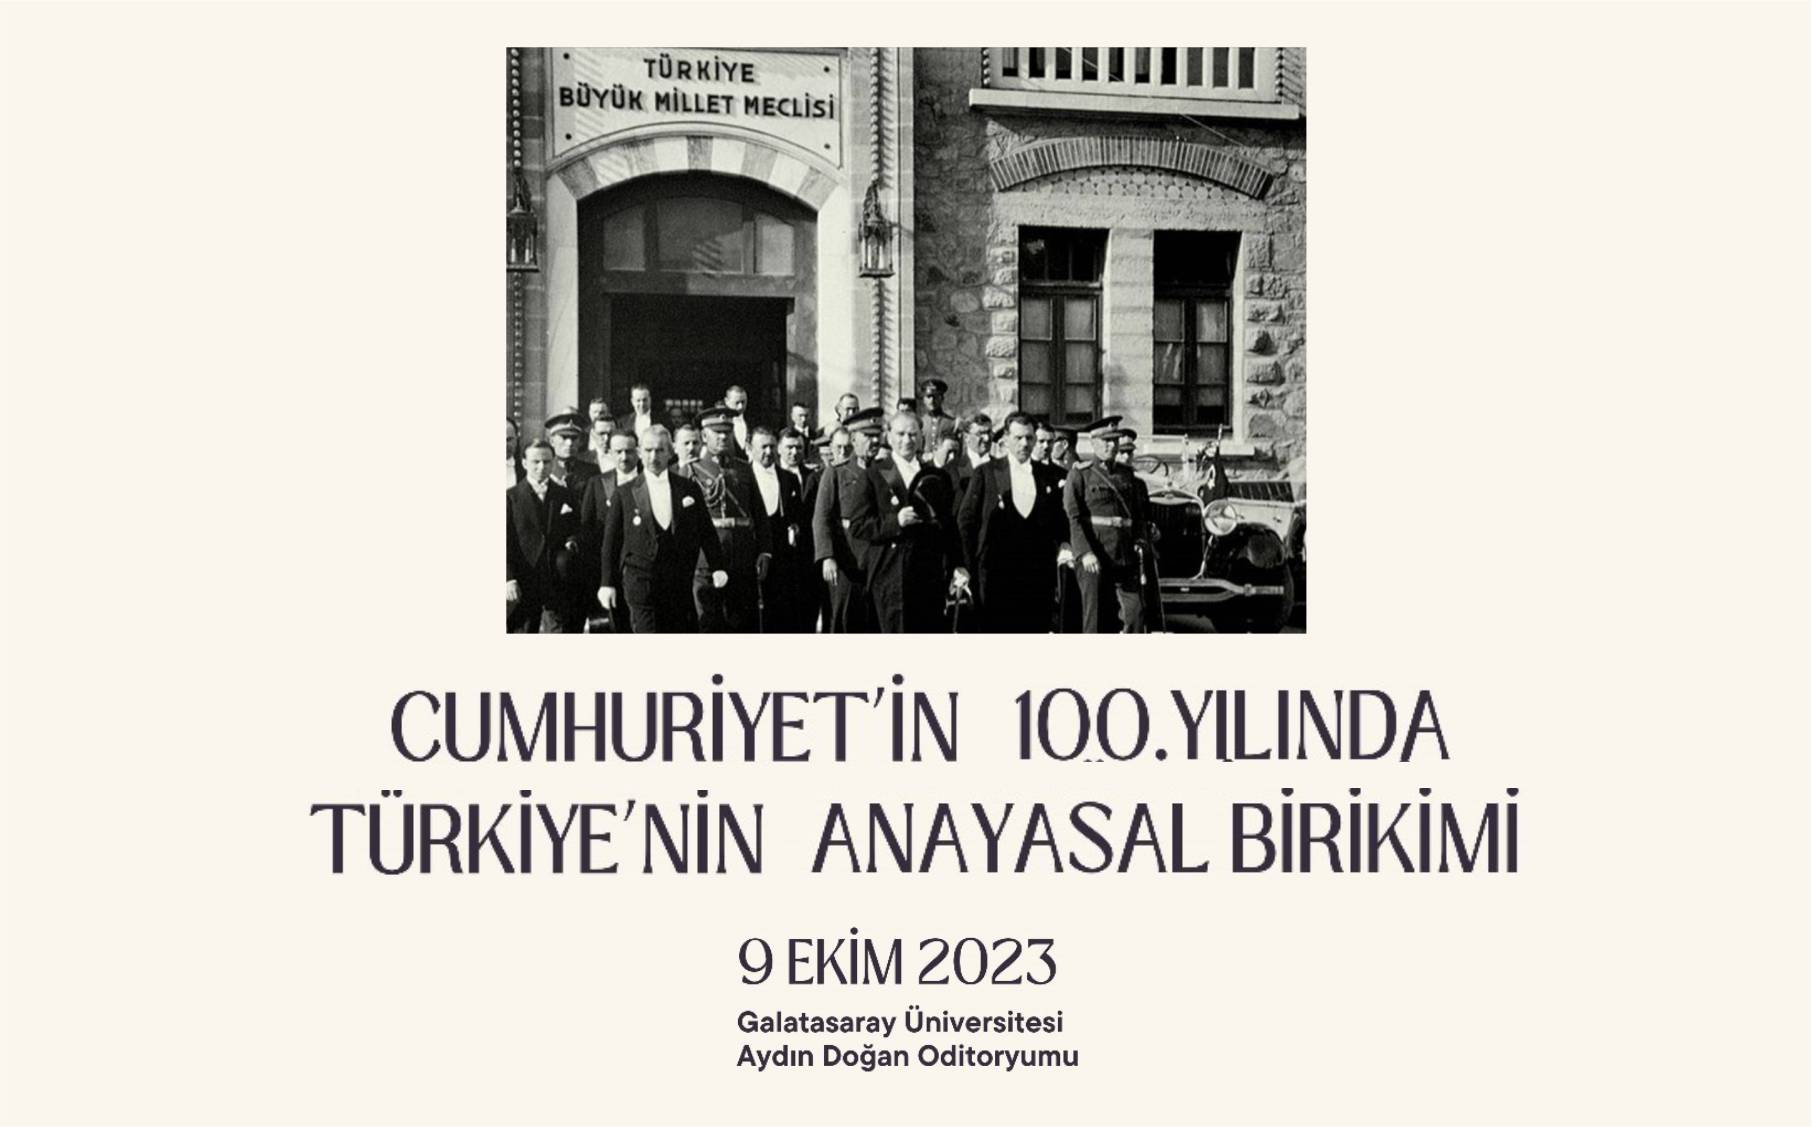 Cumhuriyet'in 100. Yılında Türkiye'nin Anayasal Birikimi duyuru görseli